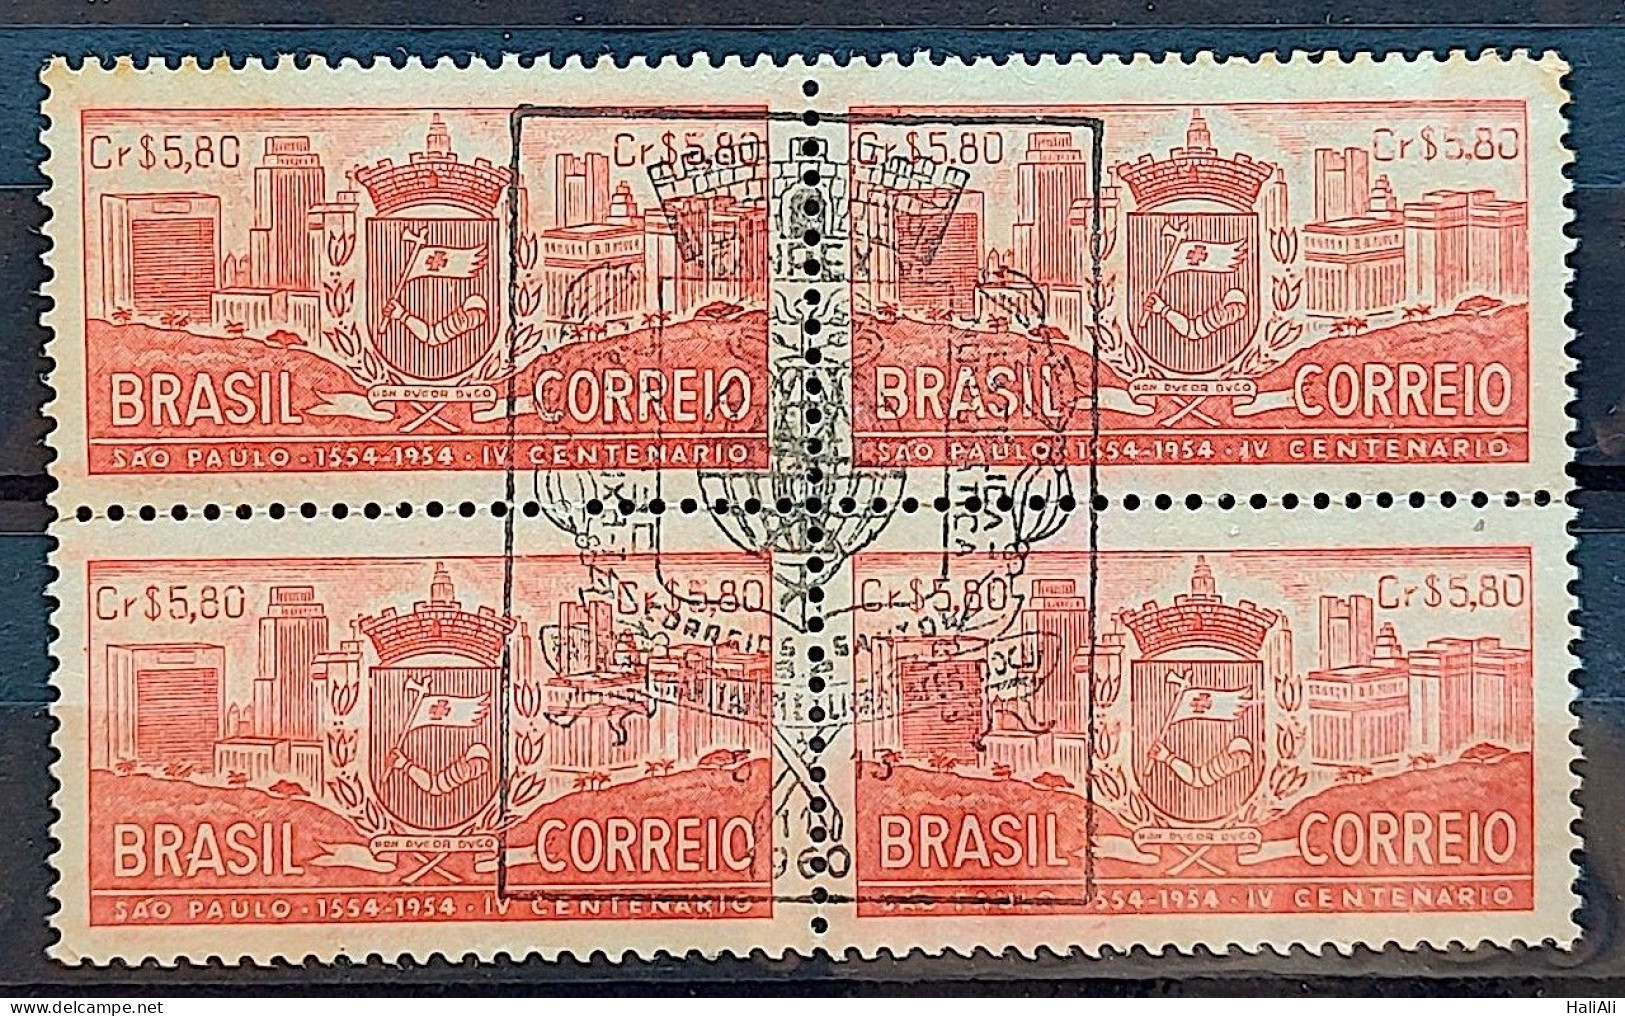 C 332 Brazil Stamp 4 Centenary Of Sao Paulo 1954 Block Of 4 CBC SP - Ungebraucht